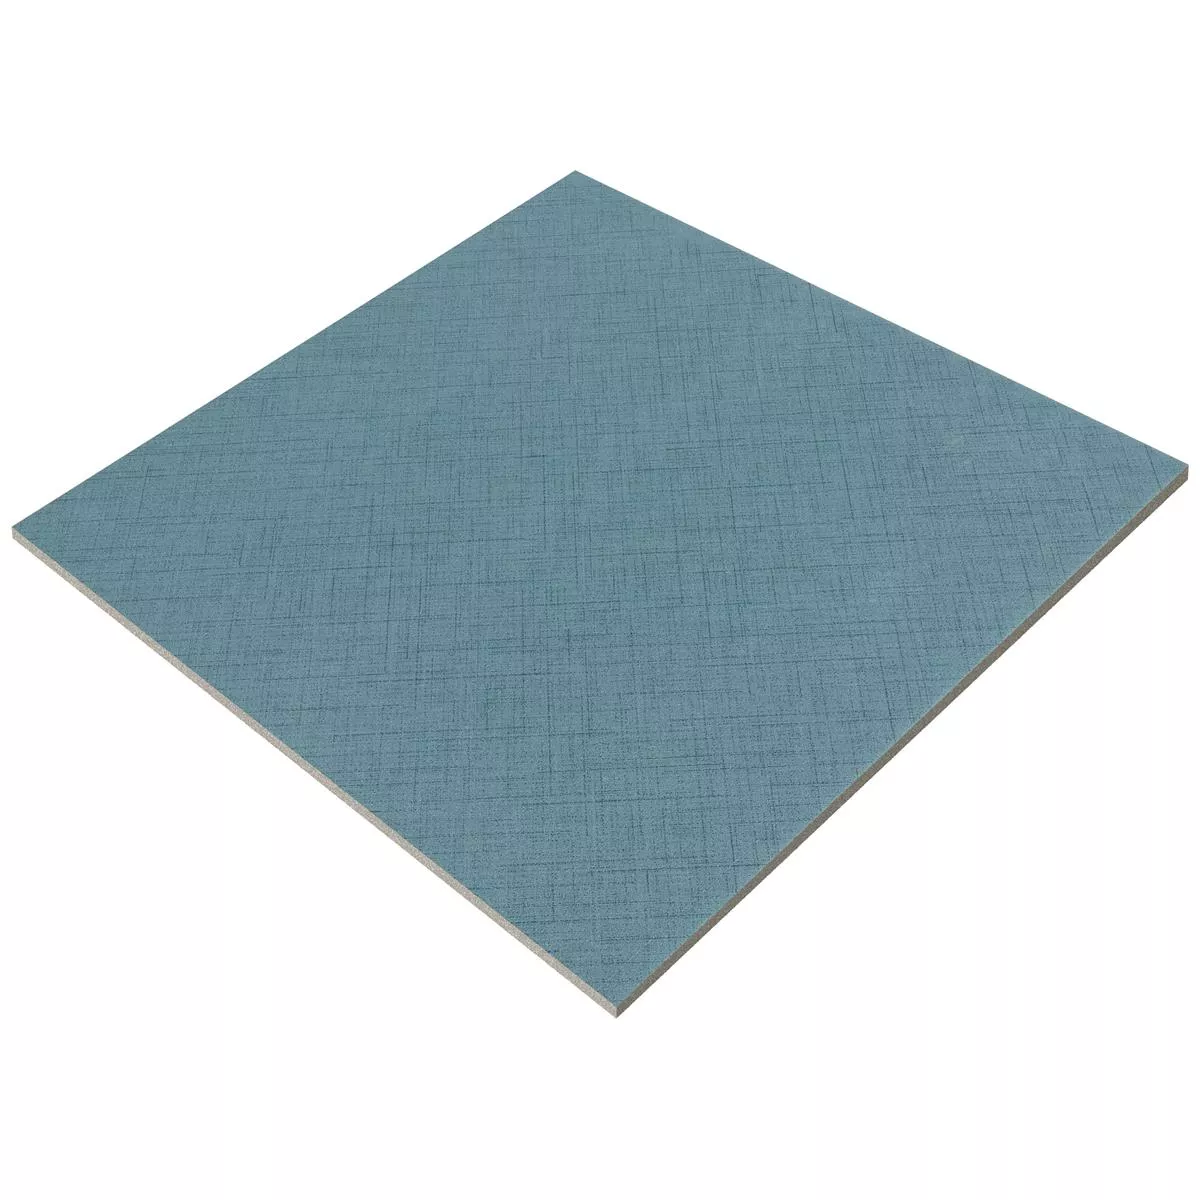 Πλακάκια Δαπέδου Flowerfield 18,5x18,5cm Μπλε Πλακάκι Bάσης